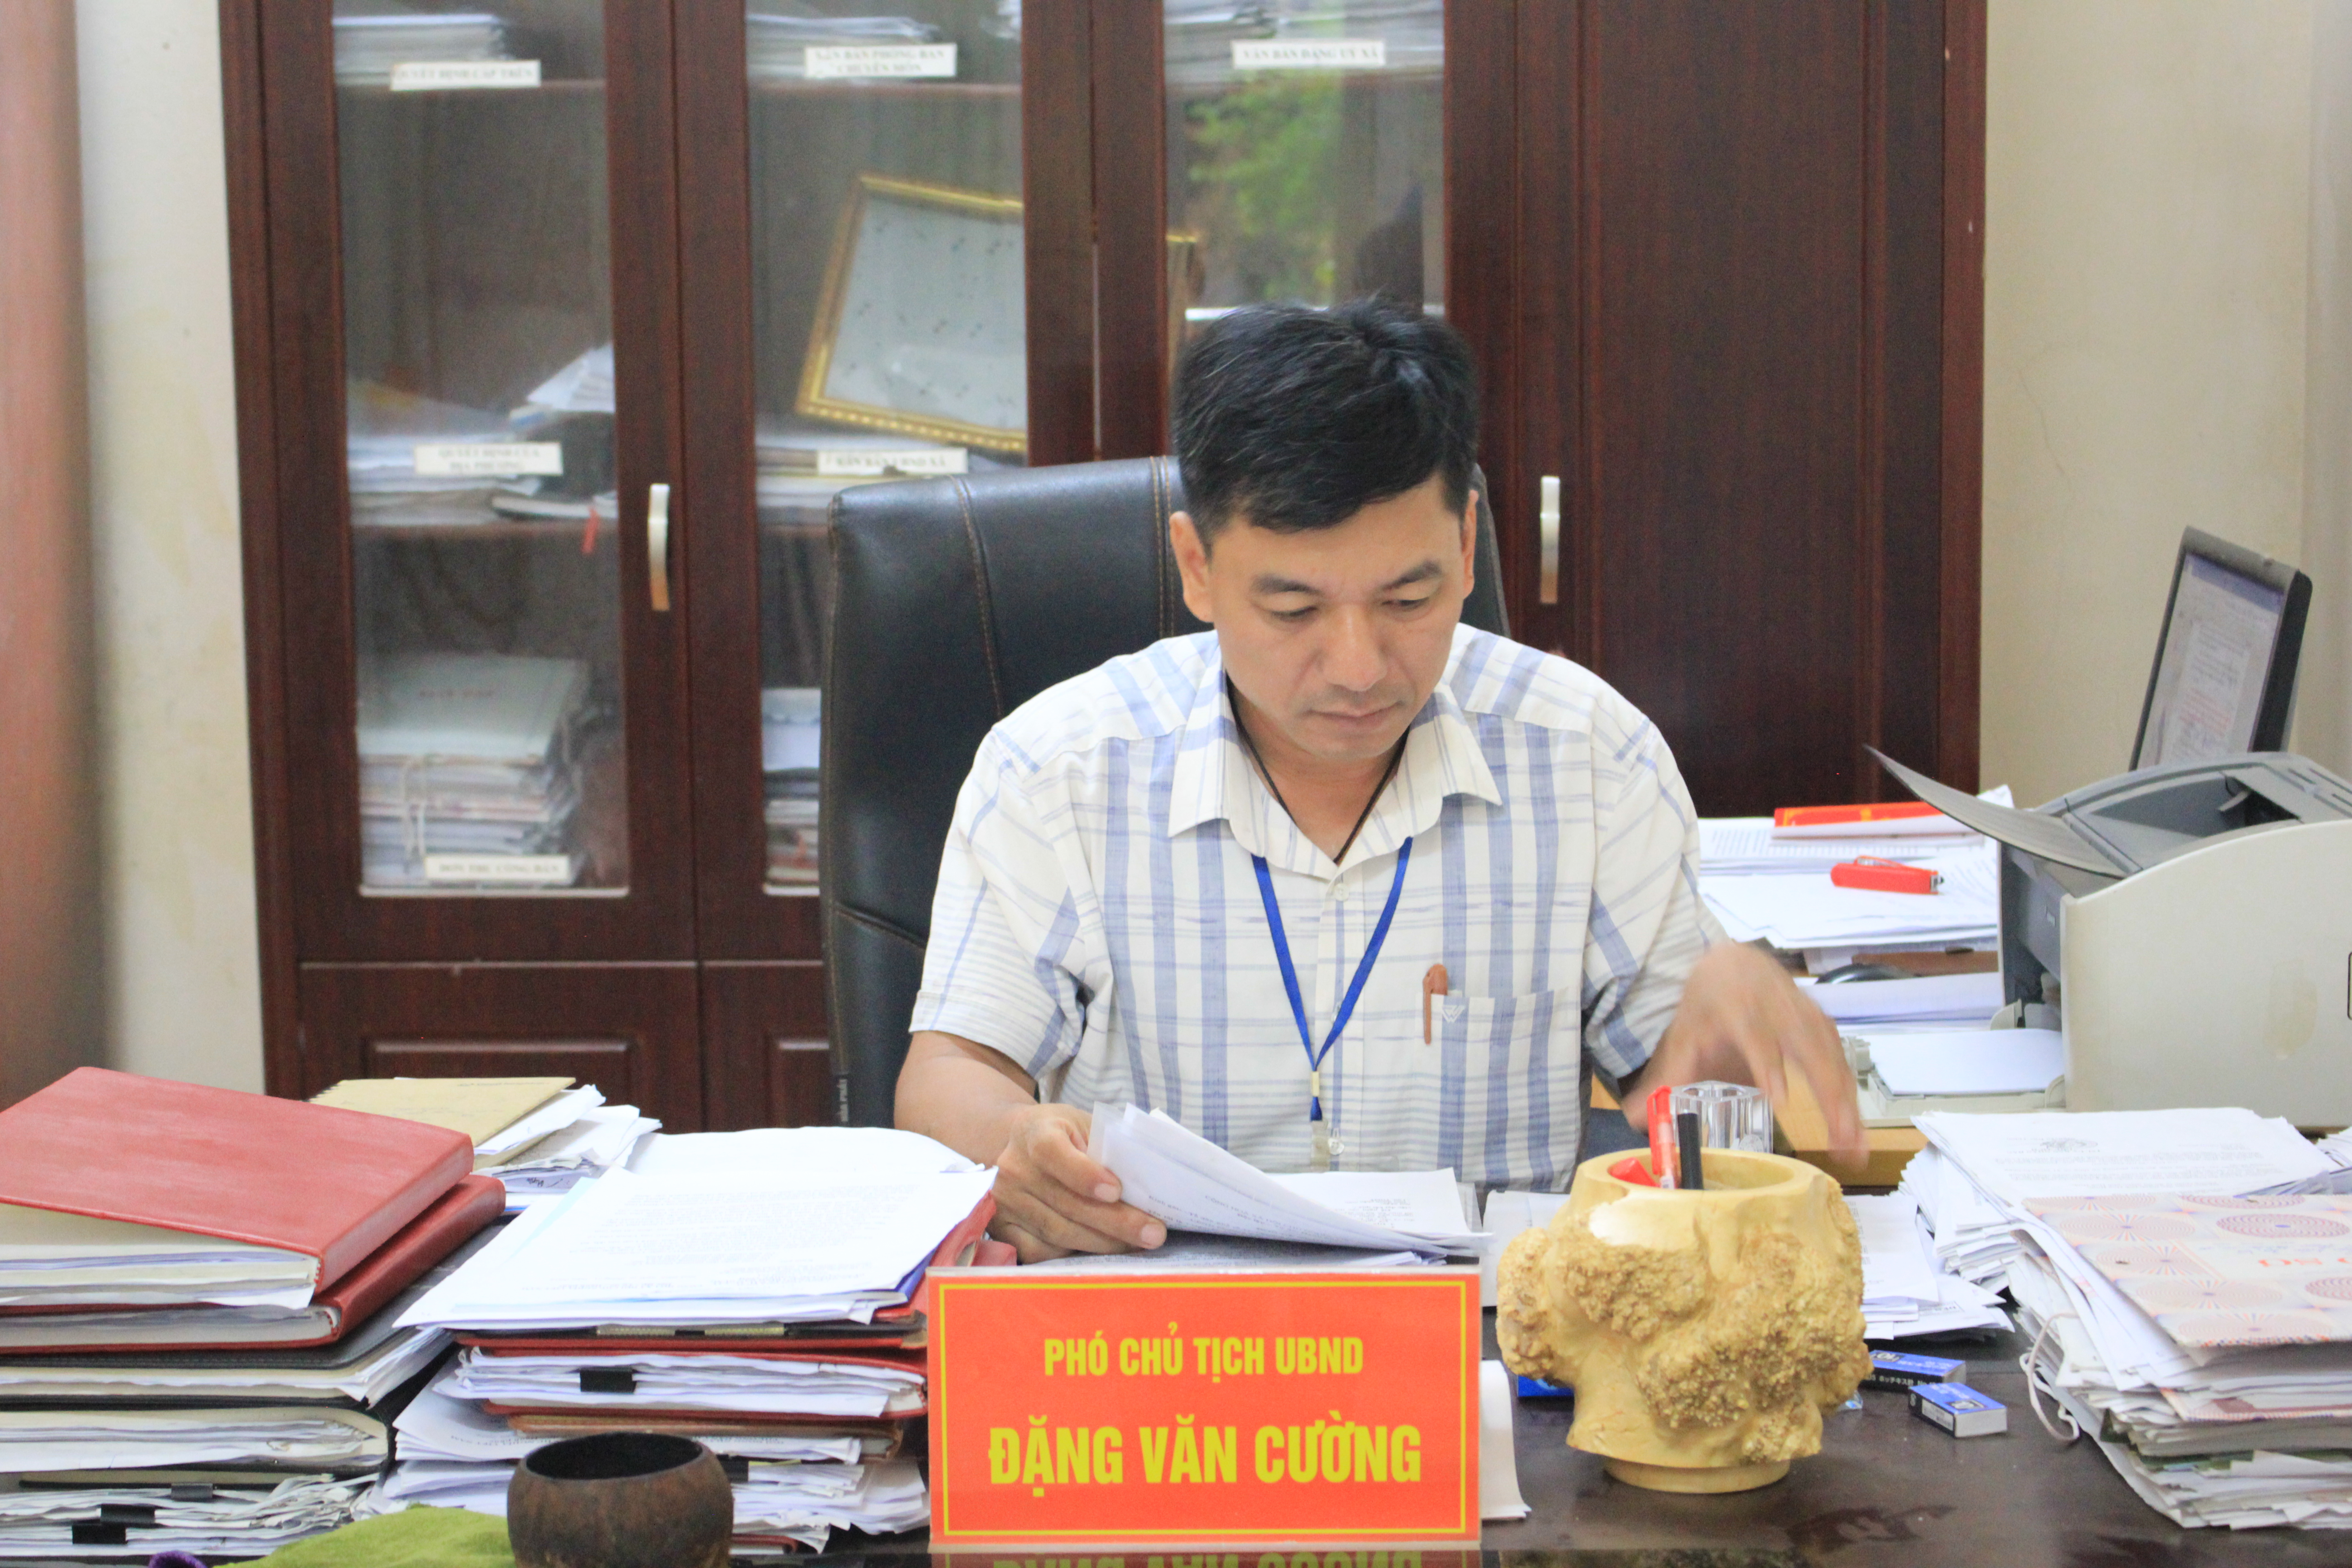 Phó Chủ tịch UBND phường Dân Chủ - Ông Đặng Văn Cường chia sẻ với Phóng viên về tình hình kinh tế - xã hội 6 tháng đầu năm trên địa bàn.